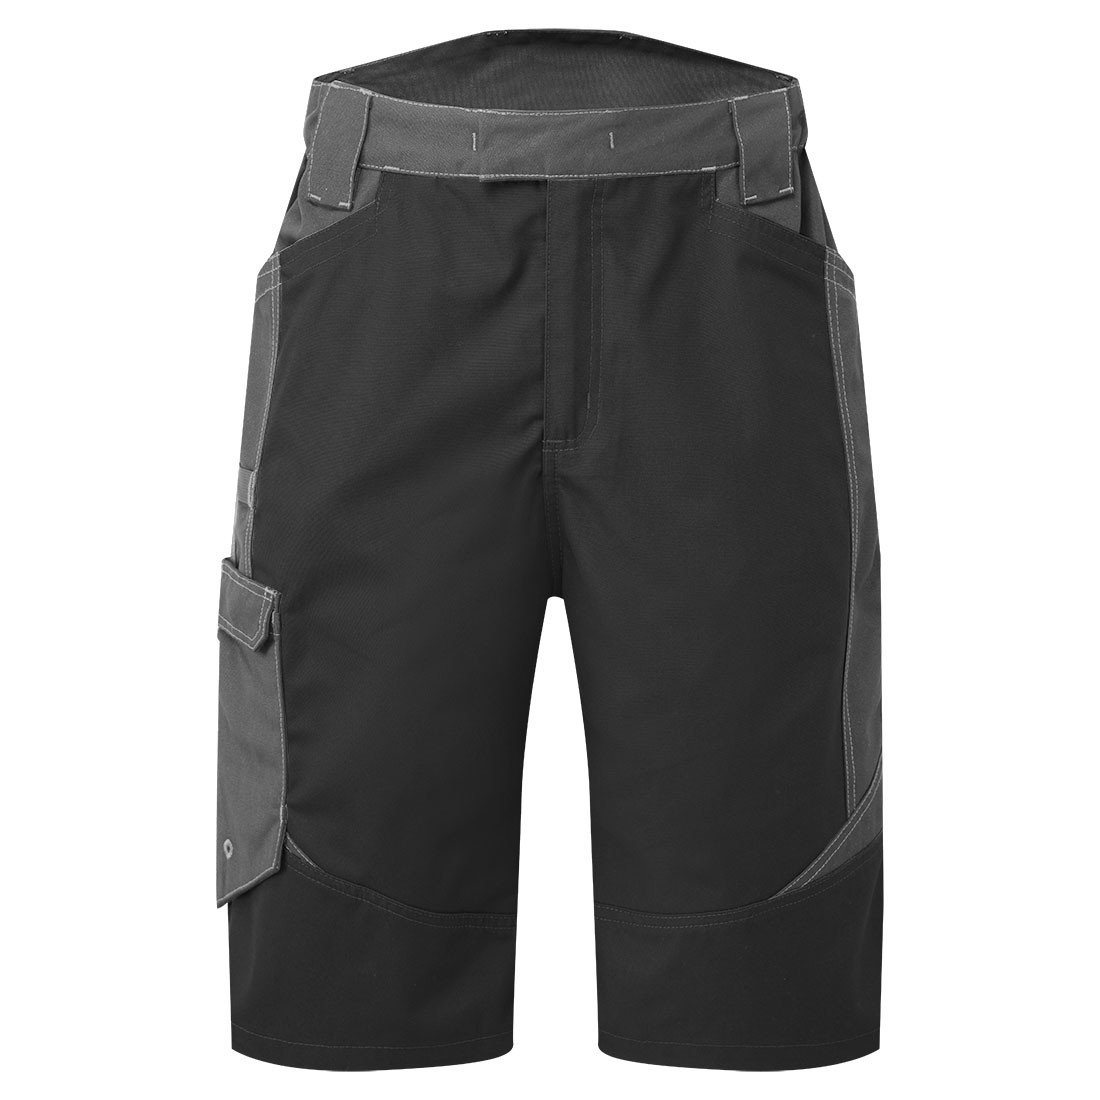 Shorts Lavage Industriel WX3 - Les vêtements de protection